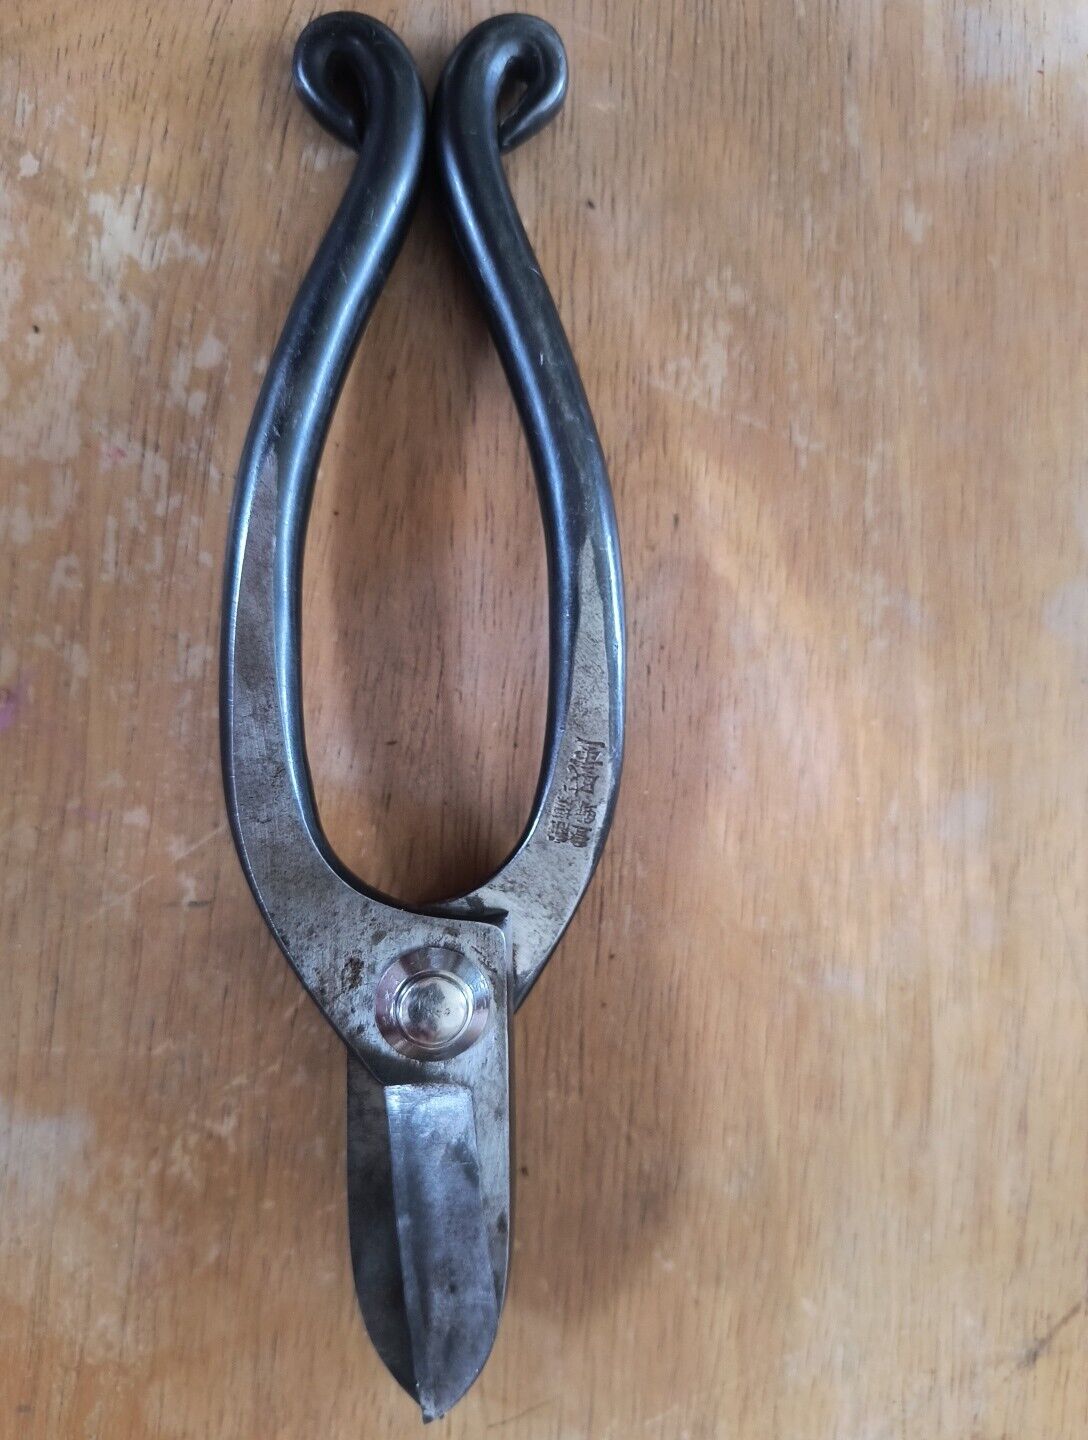 Antique Japanese Scissors